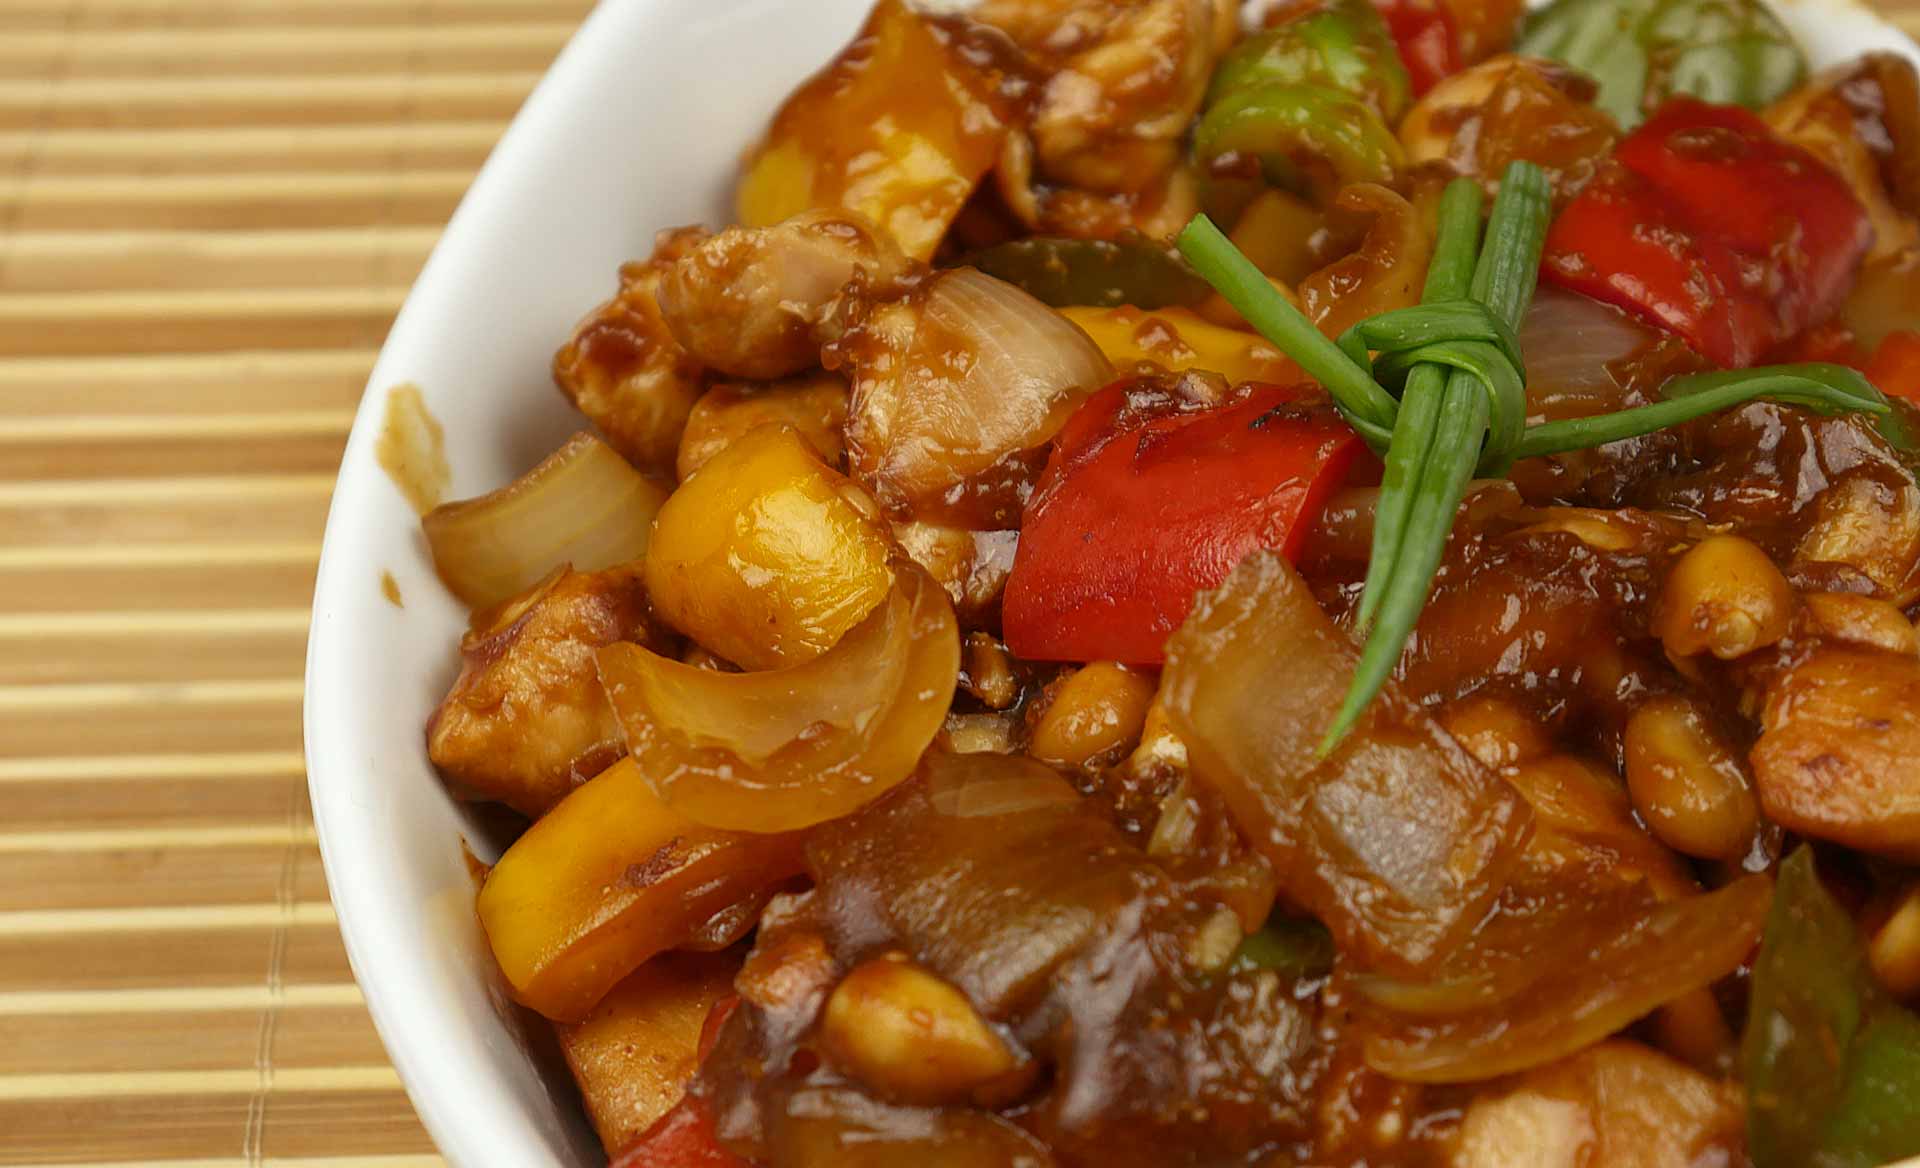 ALK Chickens - Frango xadrez, ao contrário do que diz a conceituadíssima  Wikipédia, não é um prato chinês frito e apimentado feito com frango,  amendoim, legumes, e pimenta vermelha — apesar disso